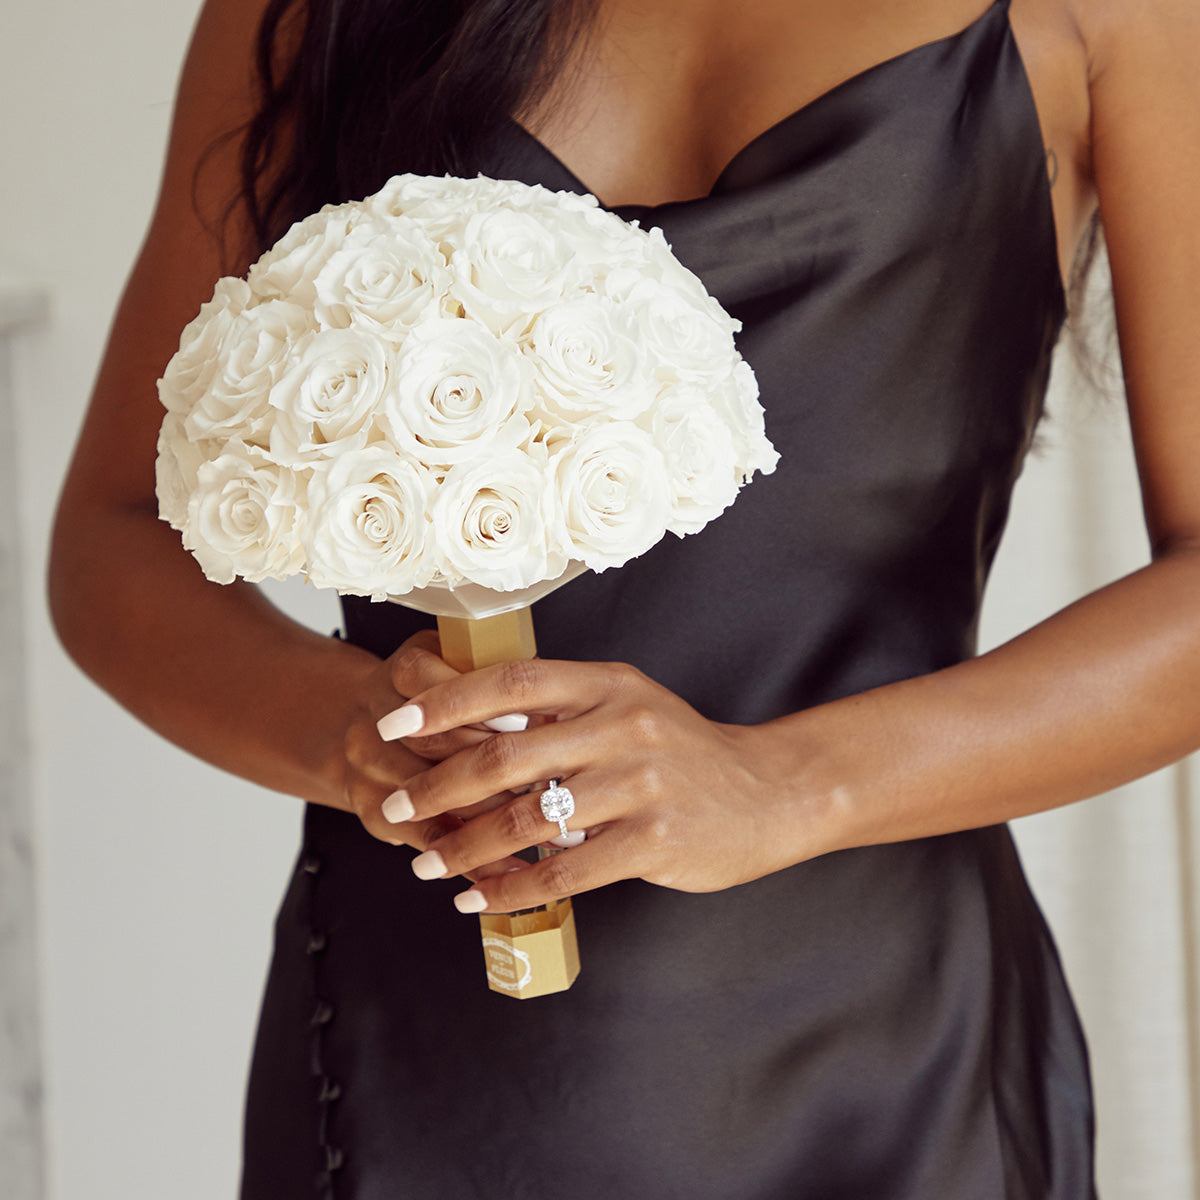 Someone holding a Venus et Fleur bridal bouquet